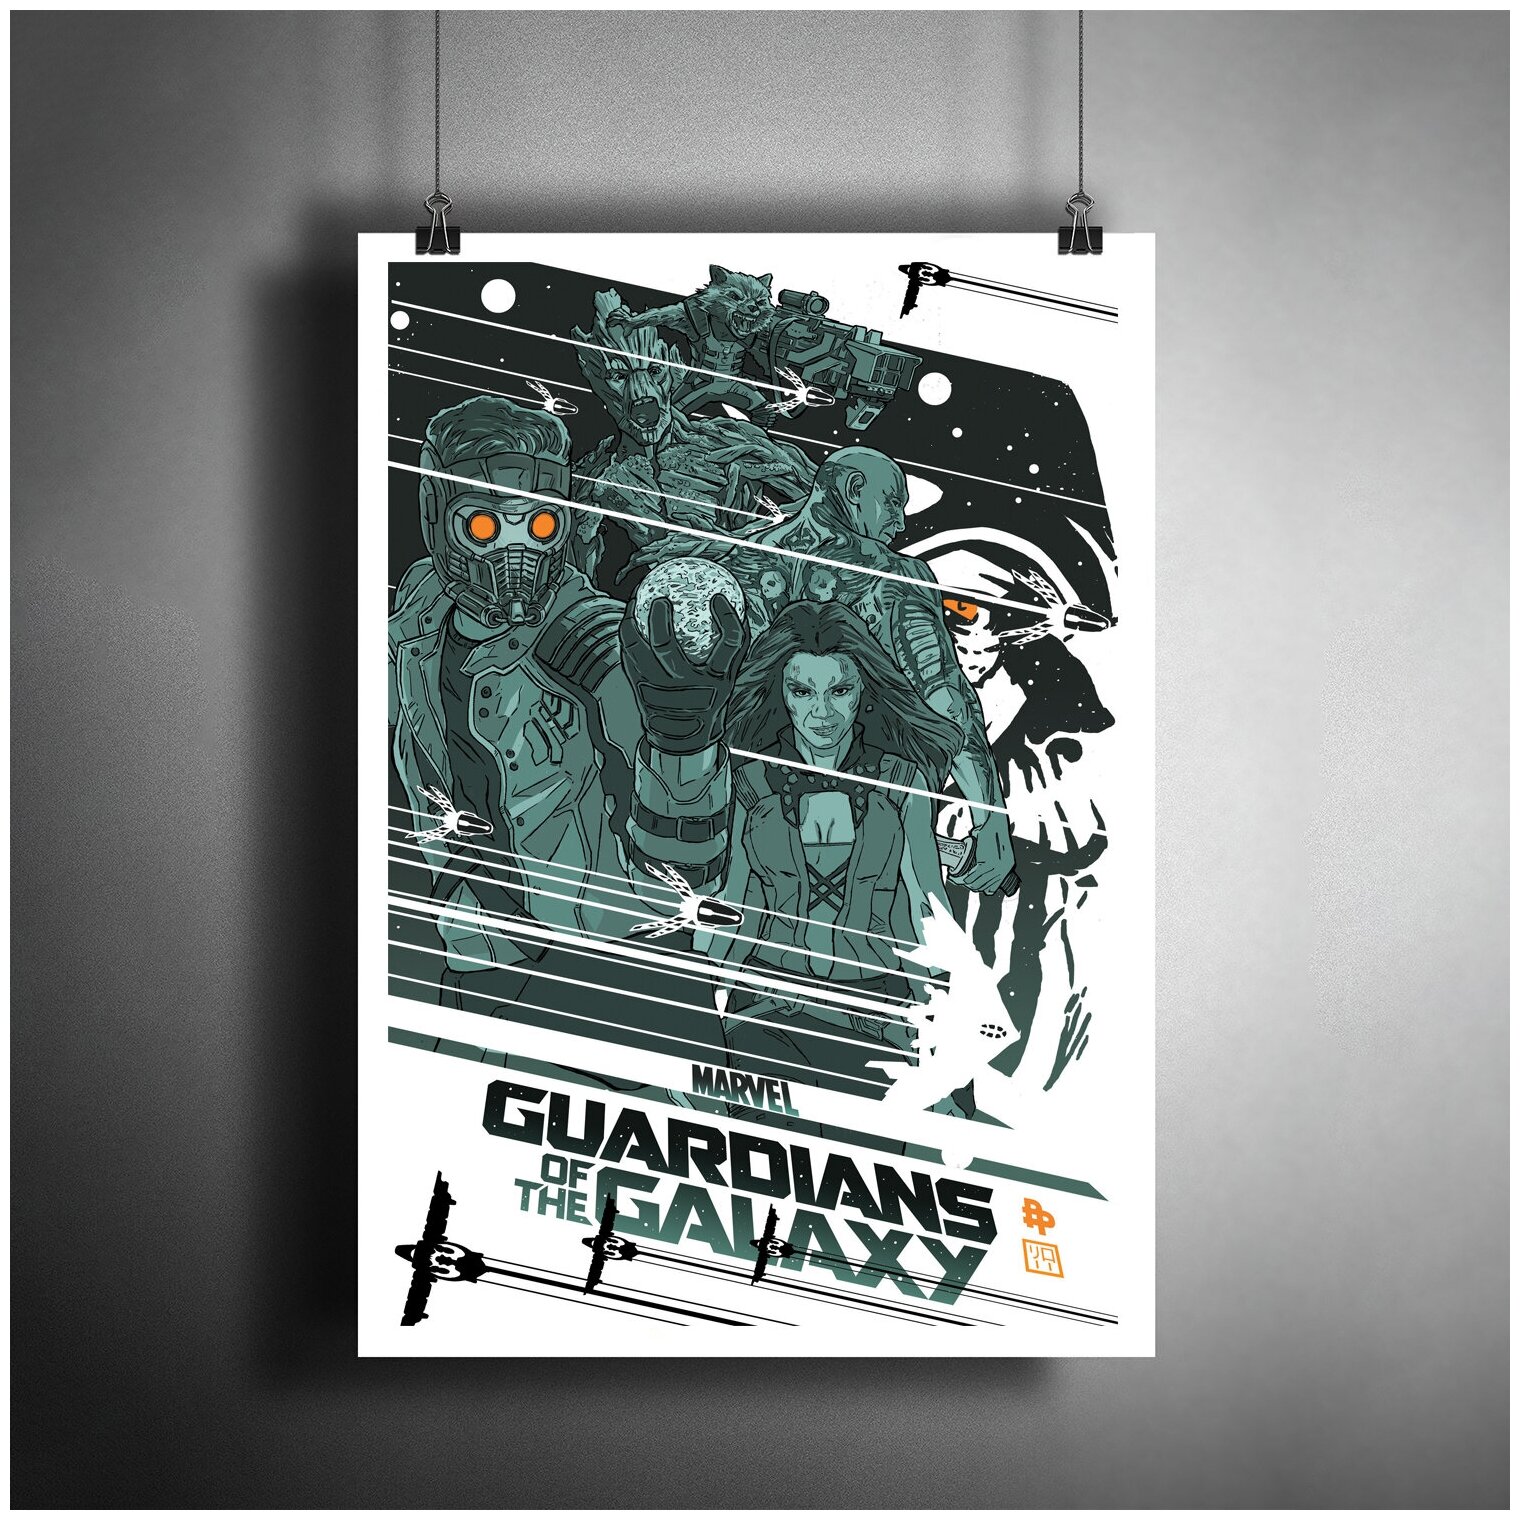 Постер плакат для интерьера "Фильм: Стражи Галактики. Guardians of the Galaxy. Комиксы Марвел"/ Декор дома, офиса, комнаты A3 (297 x 420 мм)